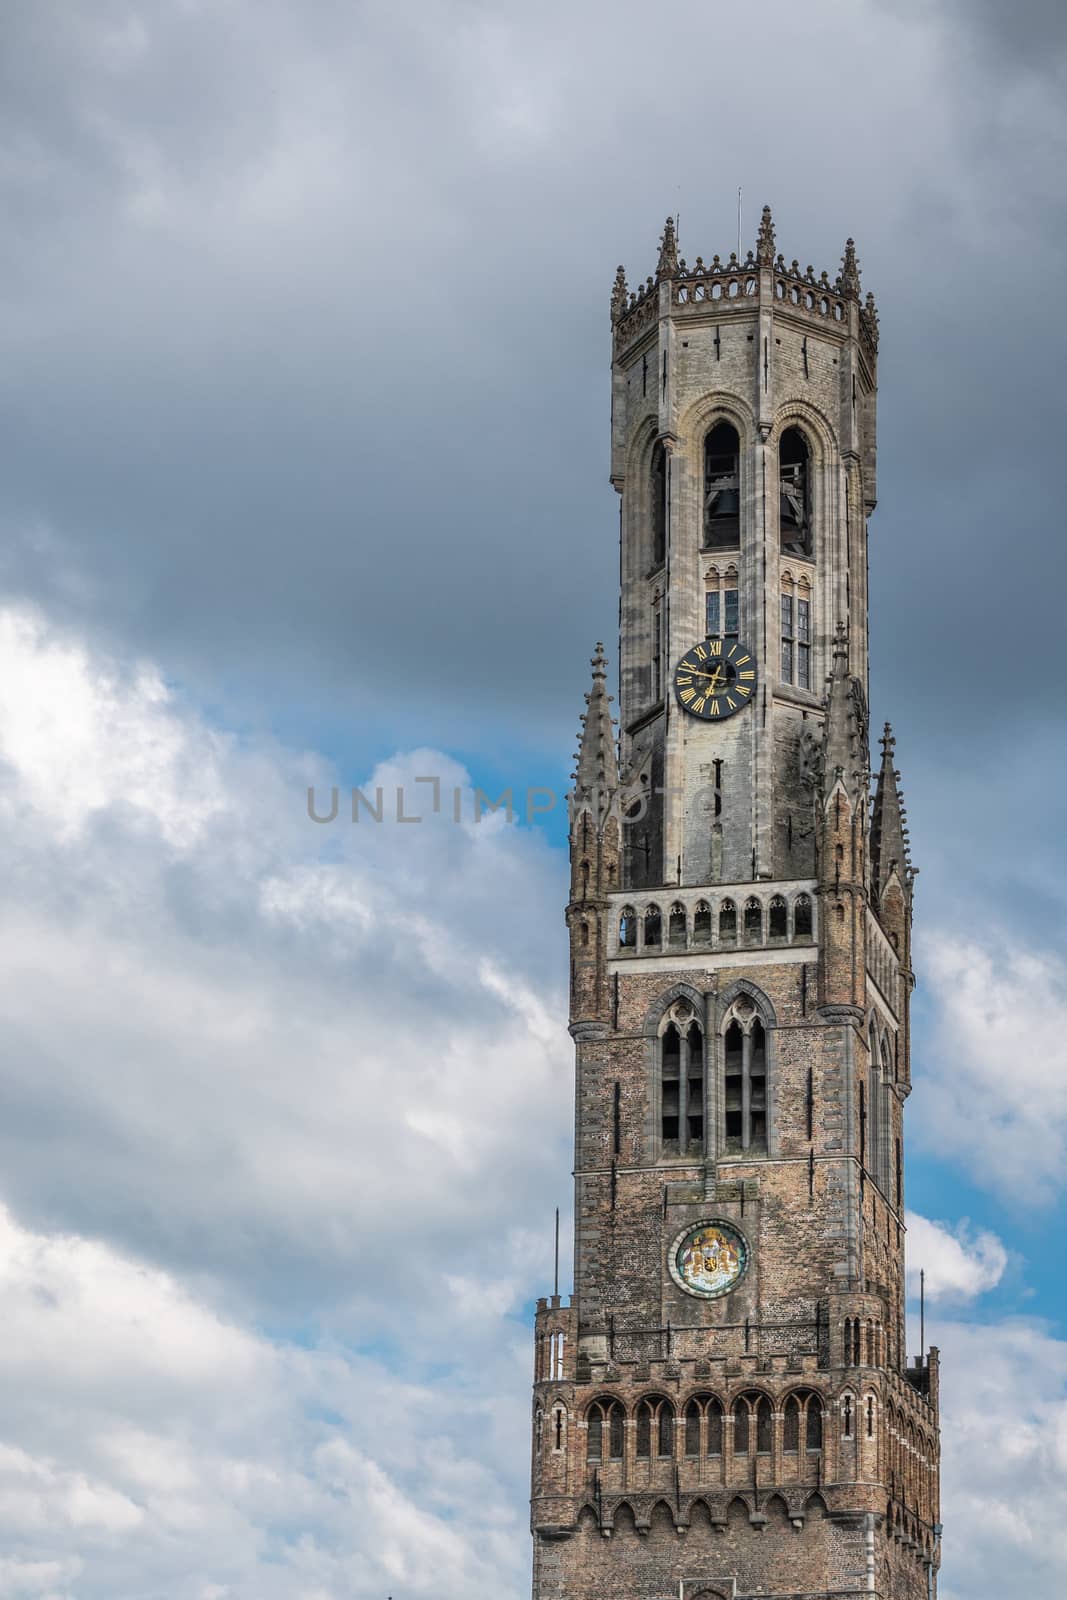 Clock tower of Belfry in Bruges, Flanders, Belgium. by Claudine